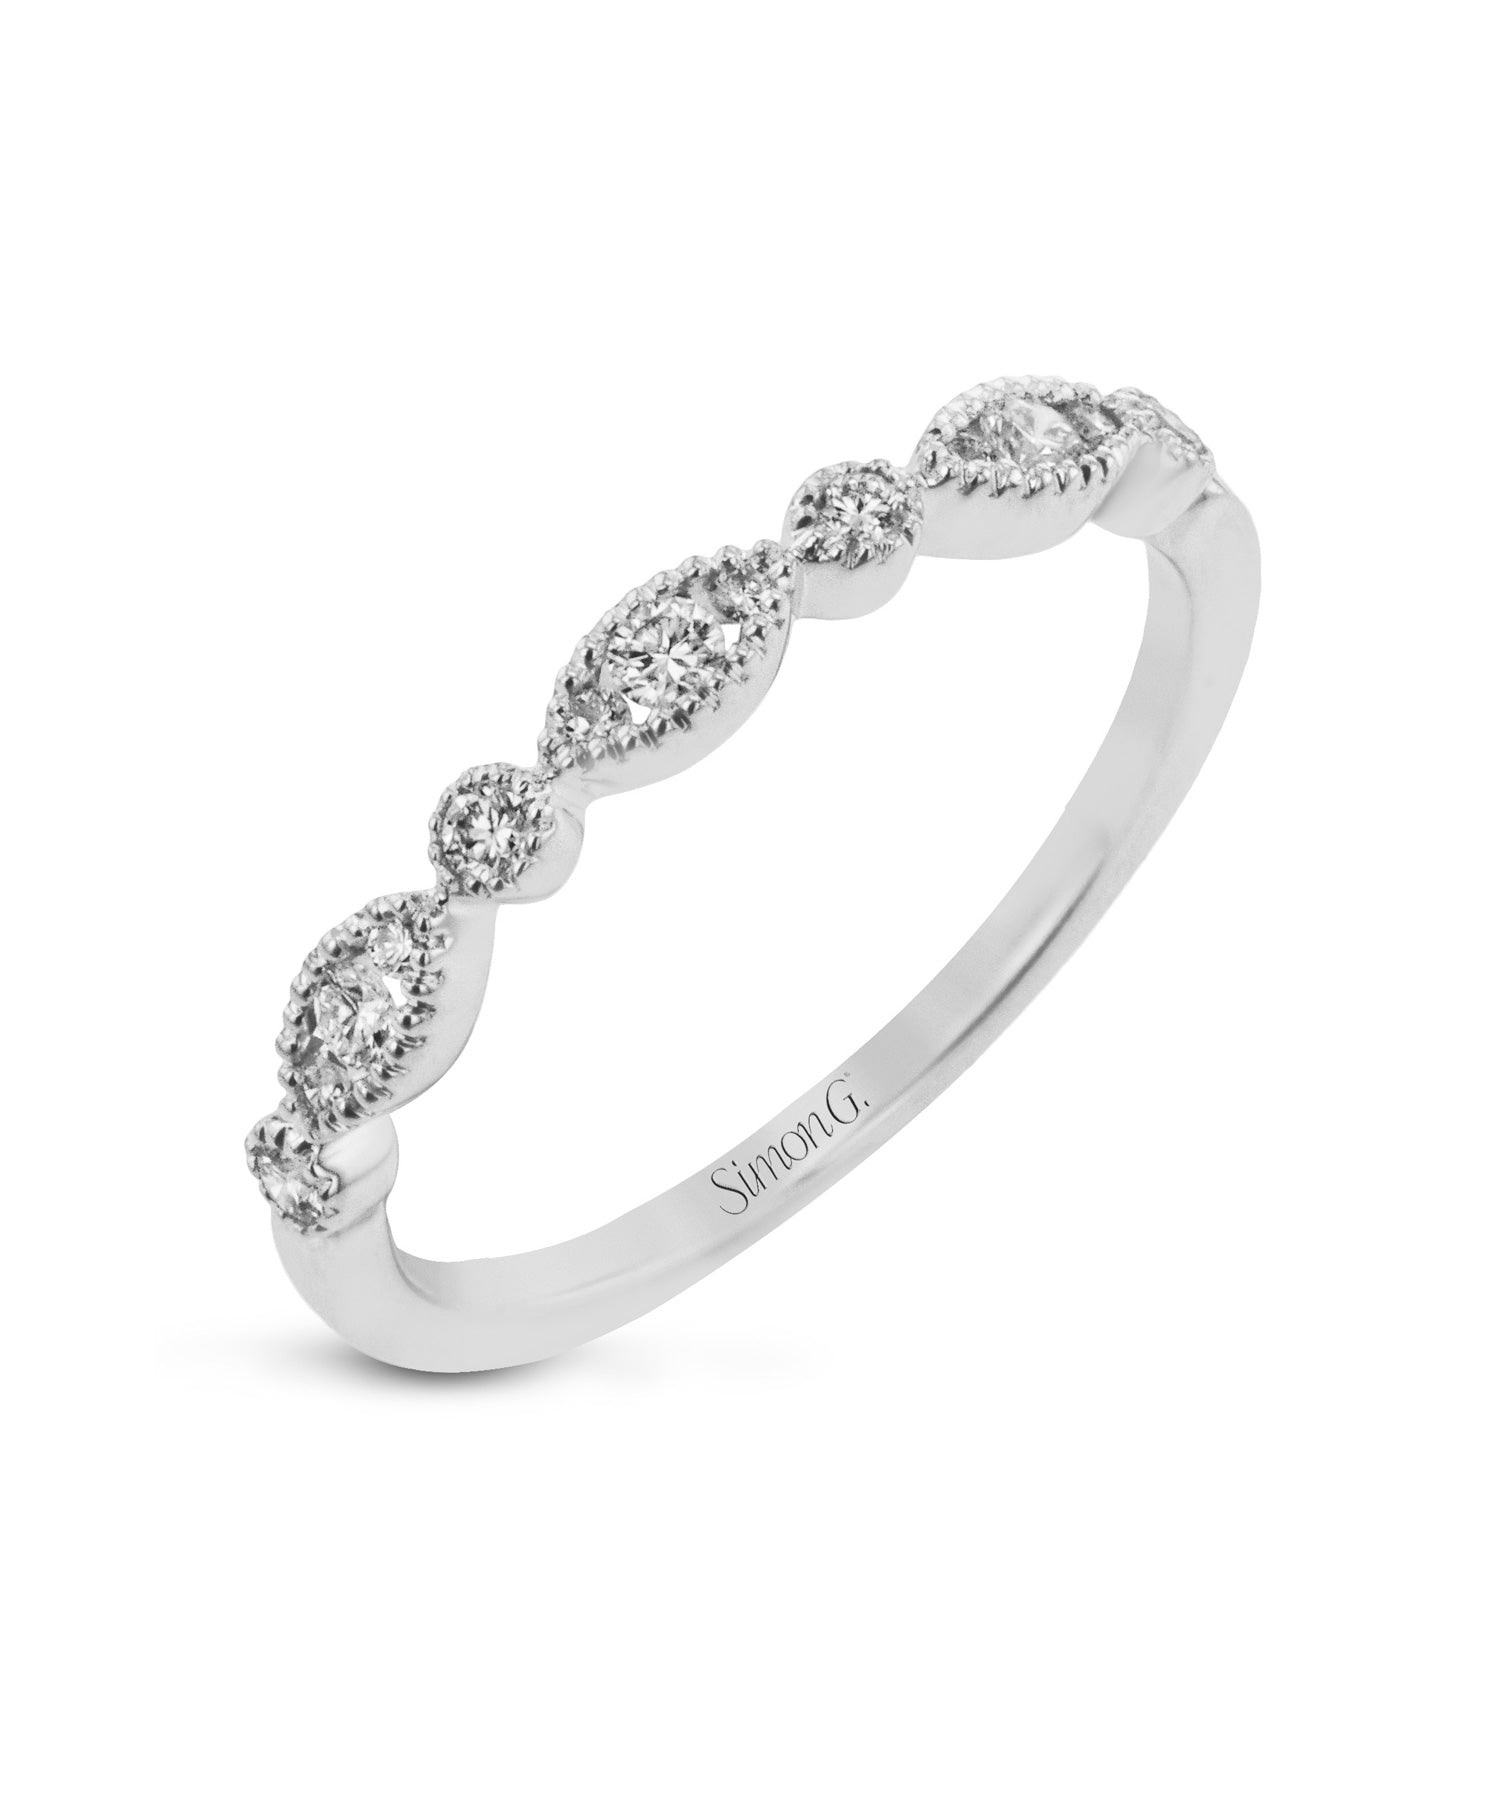 Simon G. - 18K White Gold Diamond Stackable Fashion Ring